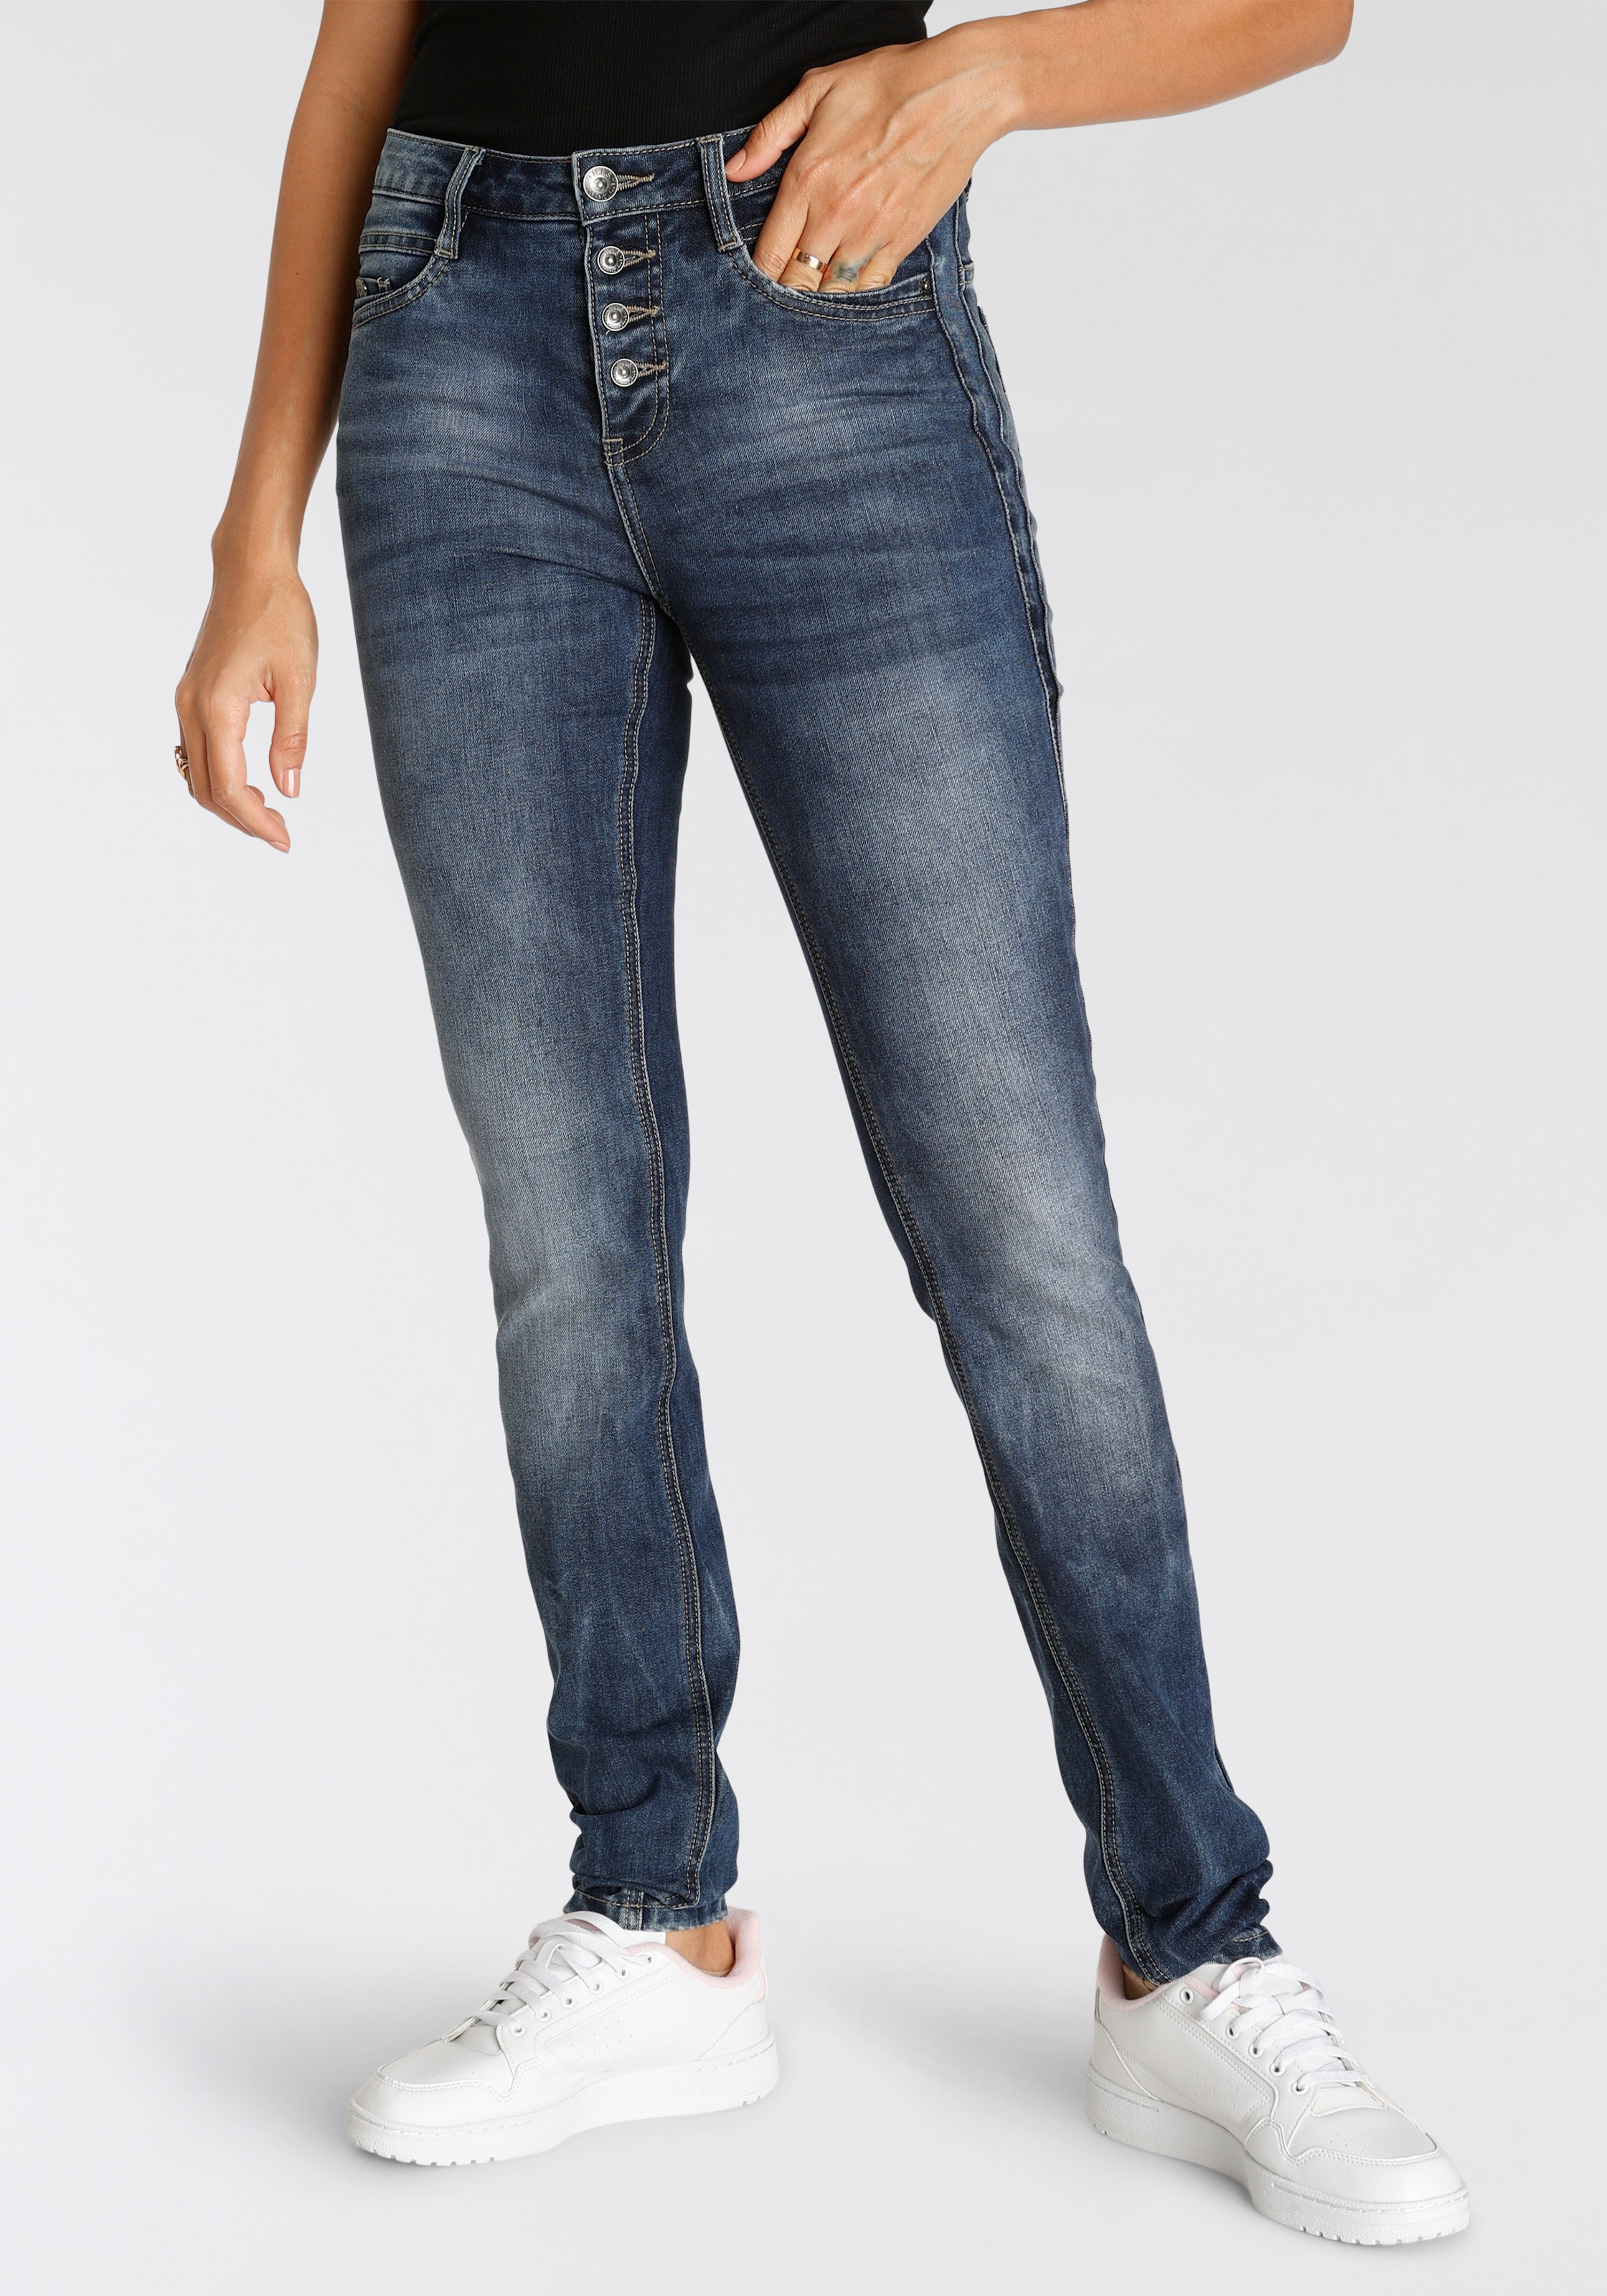 Jeans Modetrends - shoppen Damen online jetzt aktuelle His